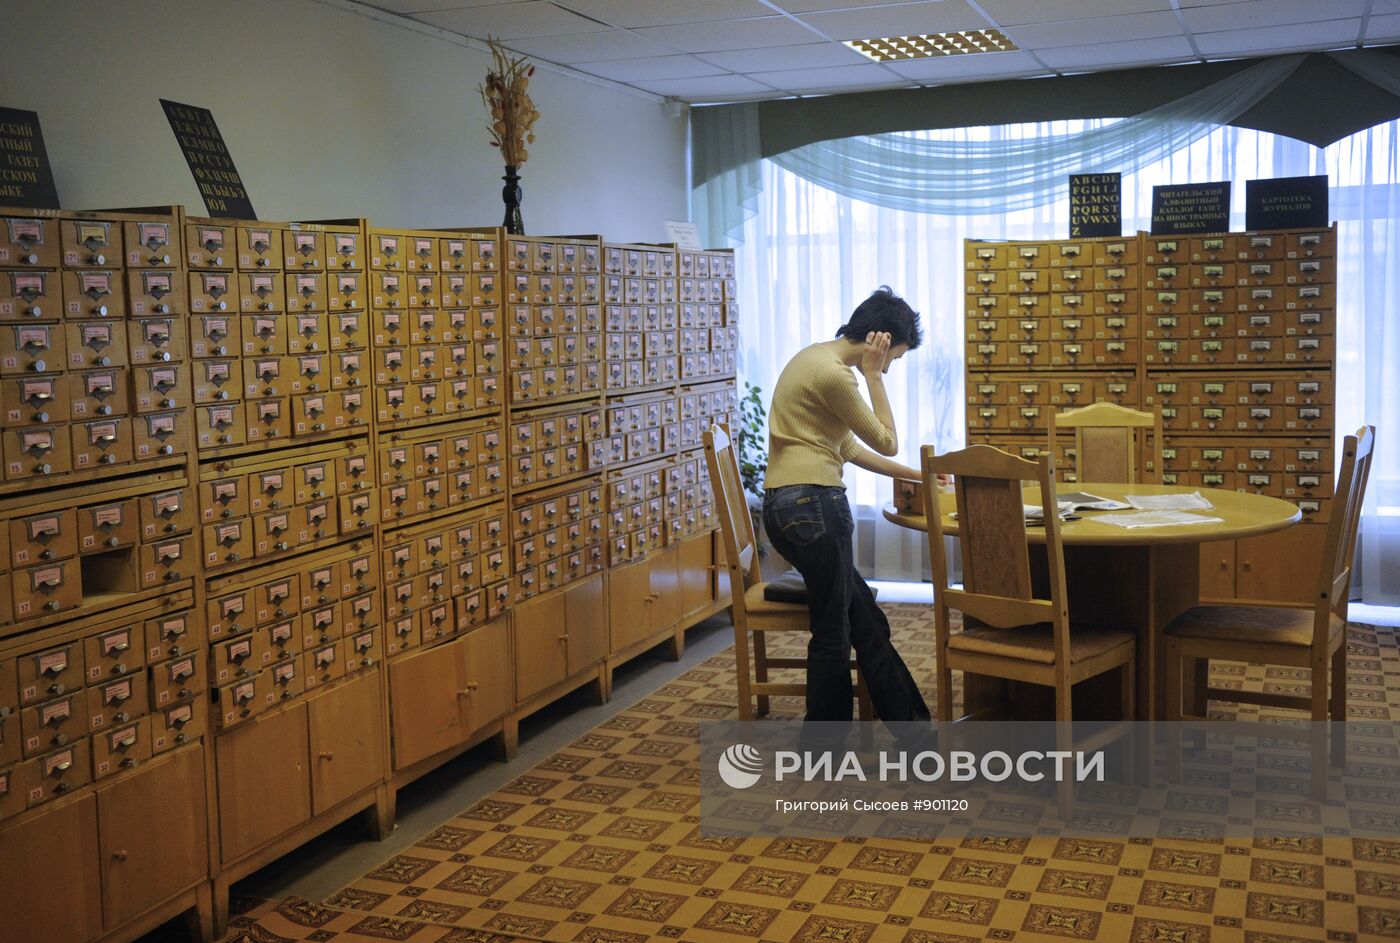 Работа отдела периодики Российской государственной библиотеки